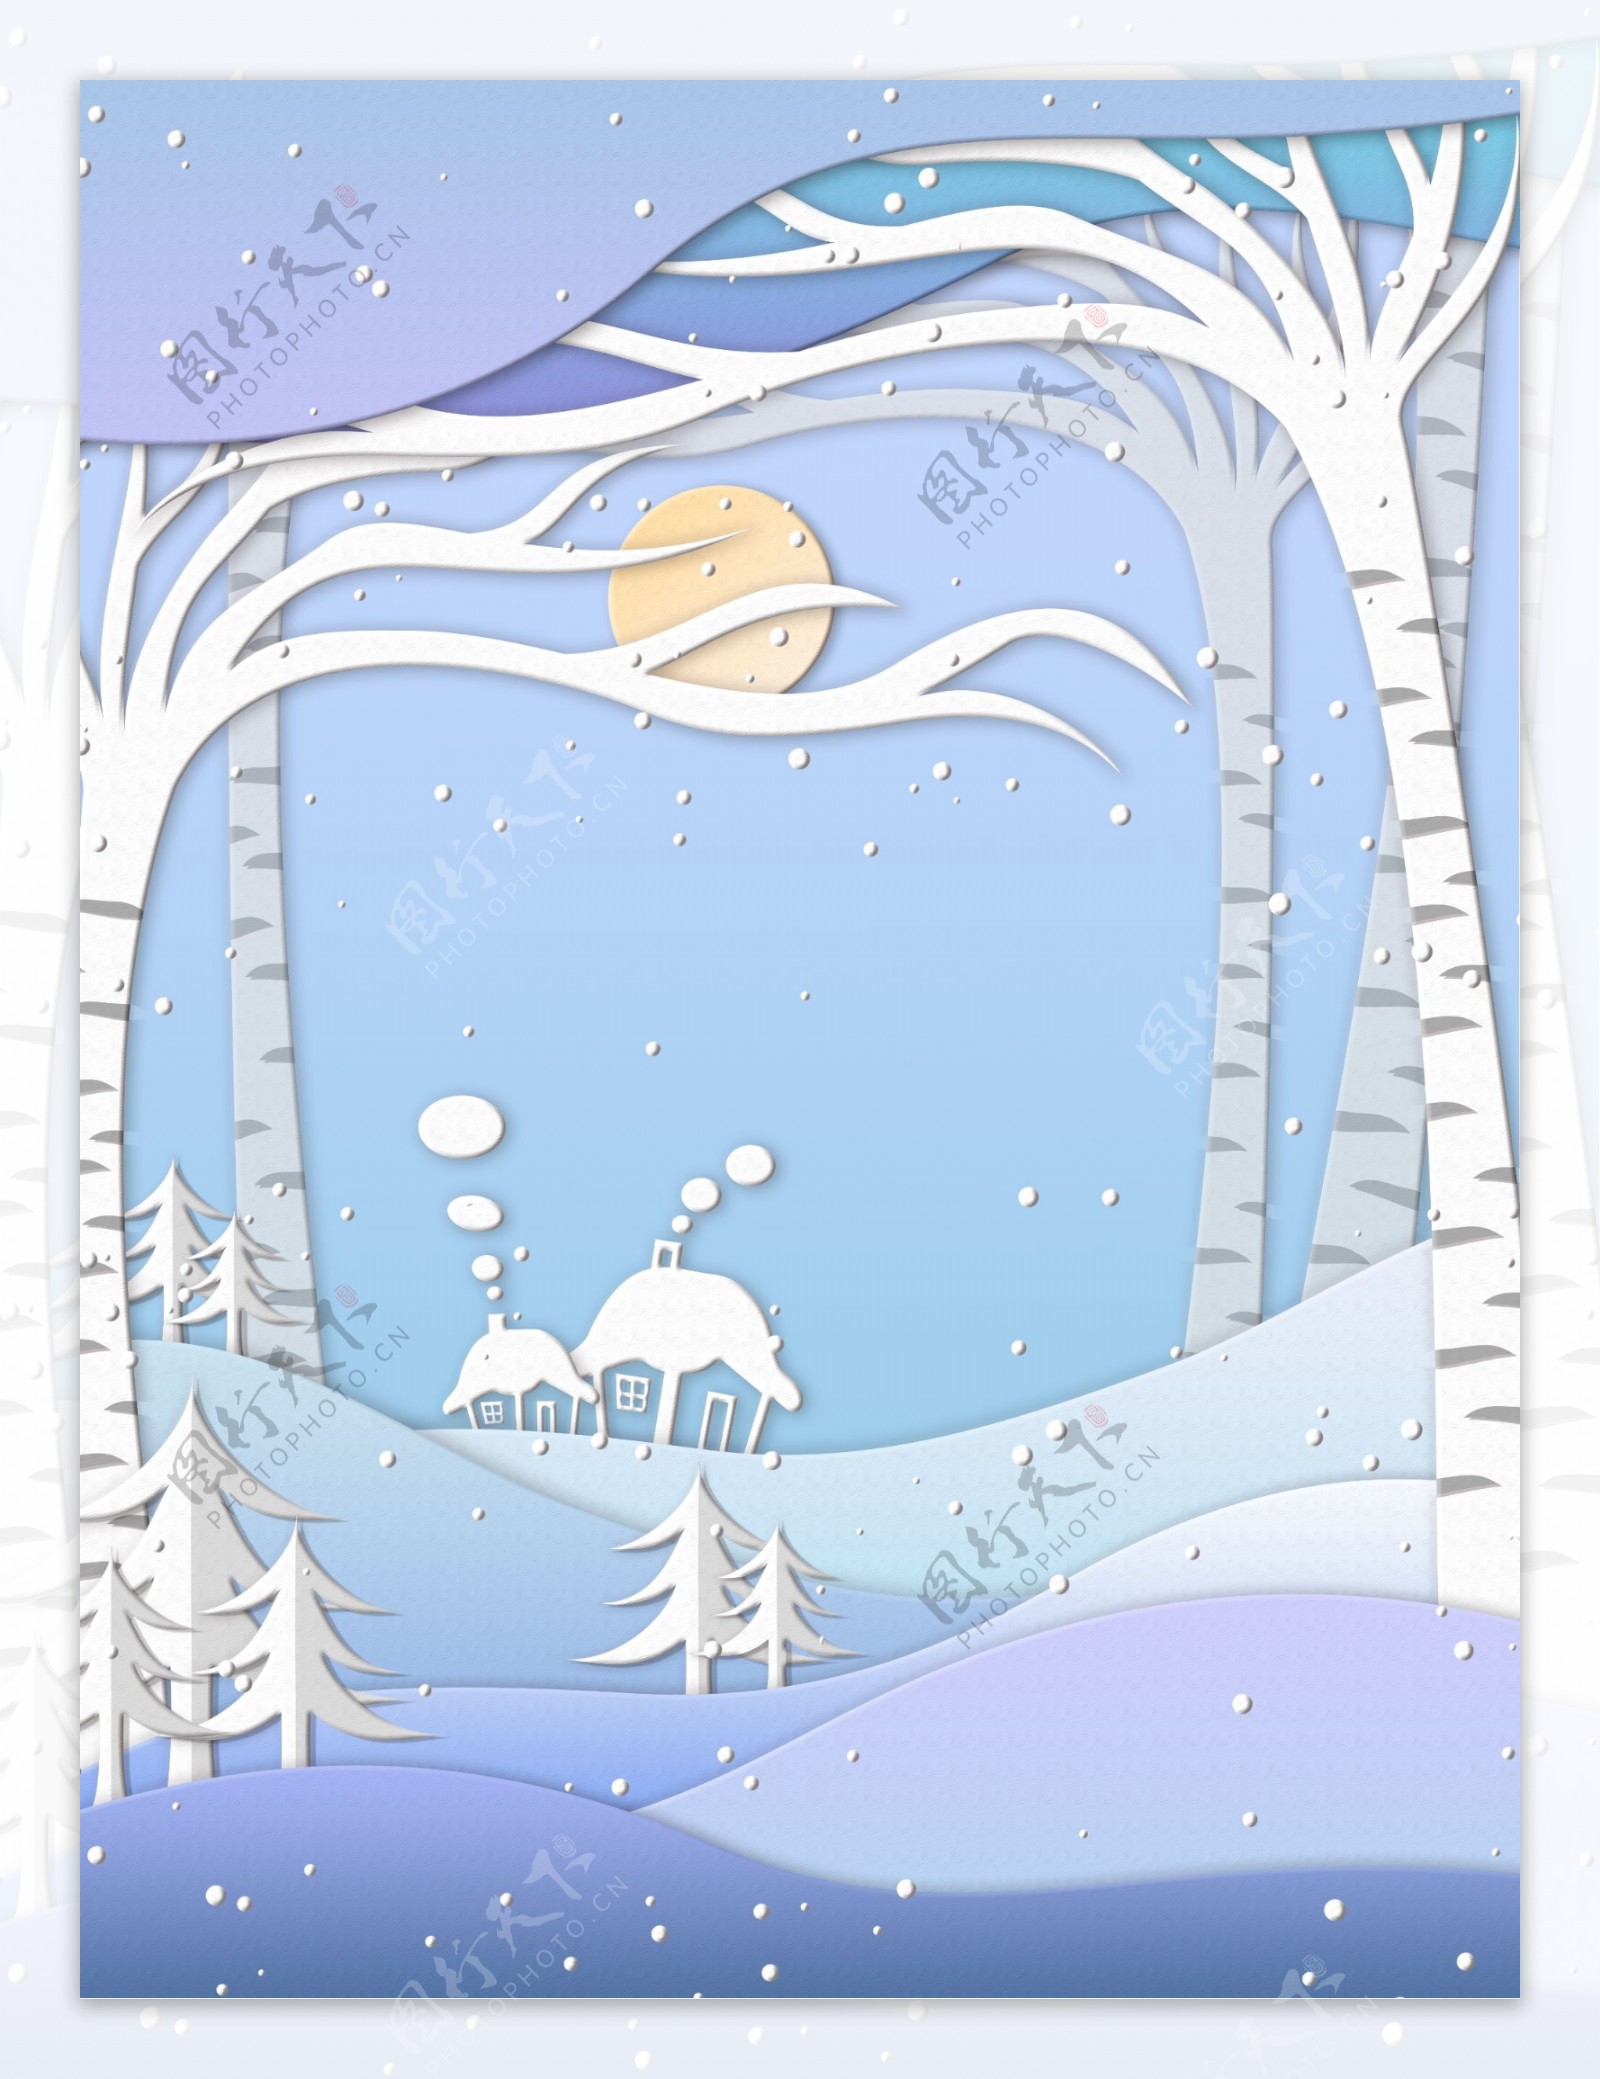 剪纸风冬季雪地鹿背景设计